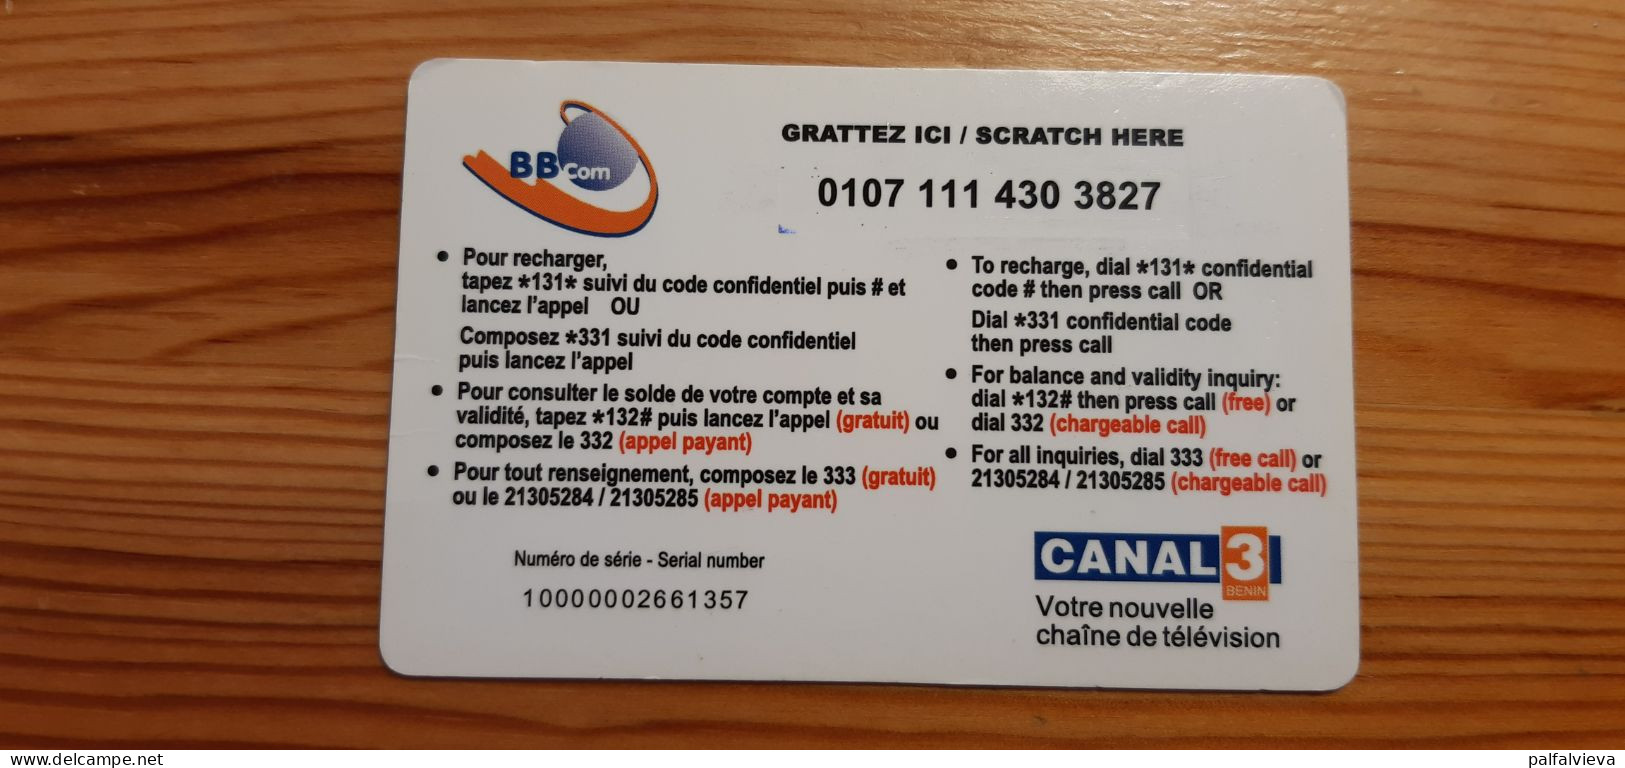 Prepaid Phonecard Benin, Bell Benin - Benin